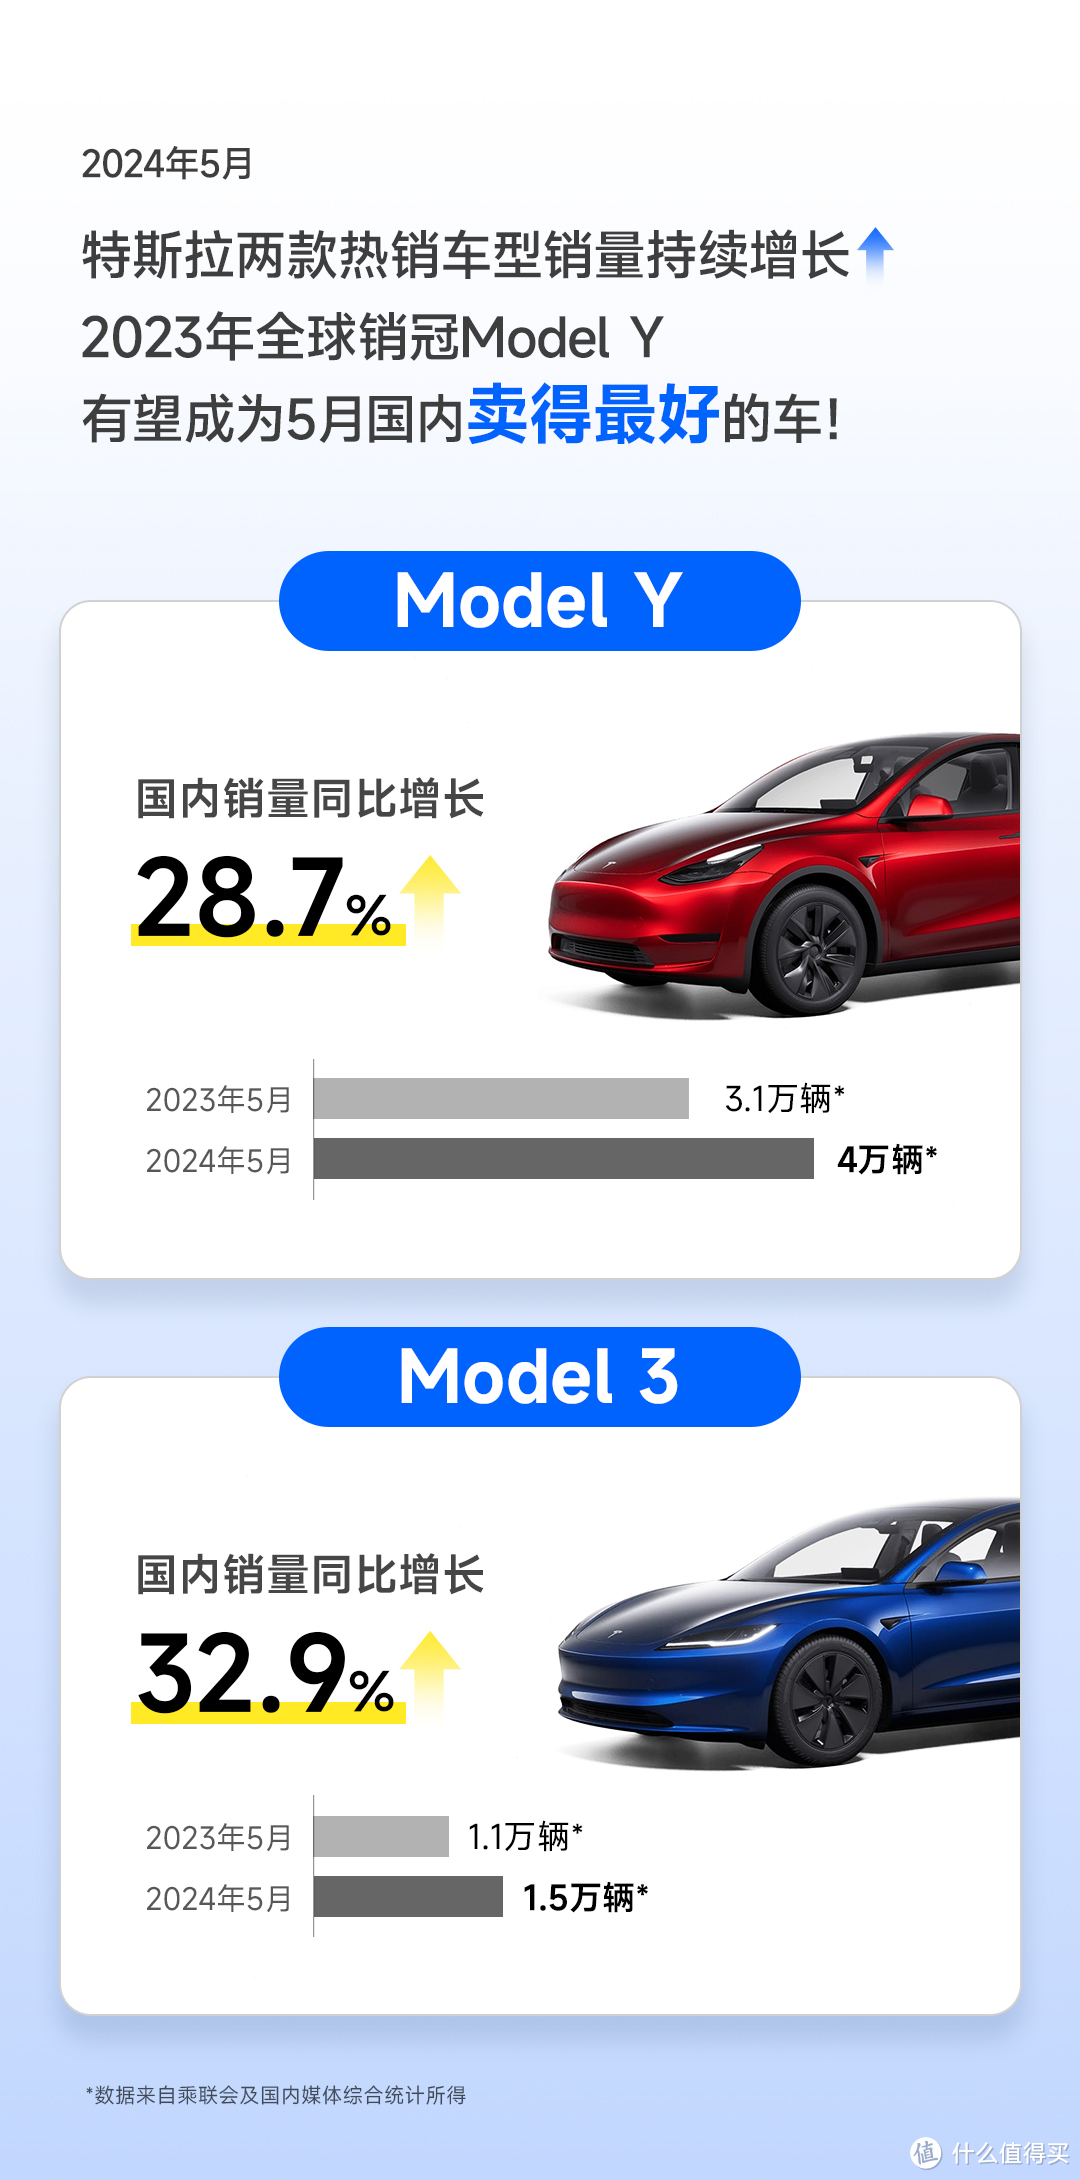 乘联会公布5月单车销量，特斯拉上海超级工厂5月交付Model Y共45,359辆，Model 3共27,214辆。